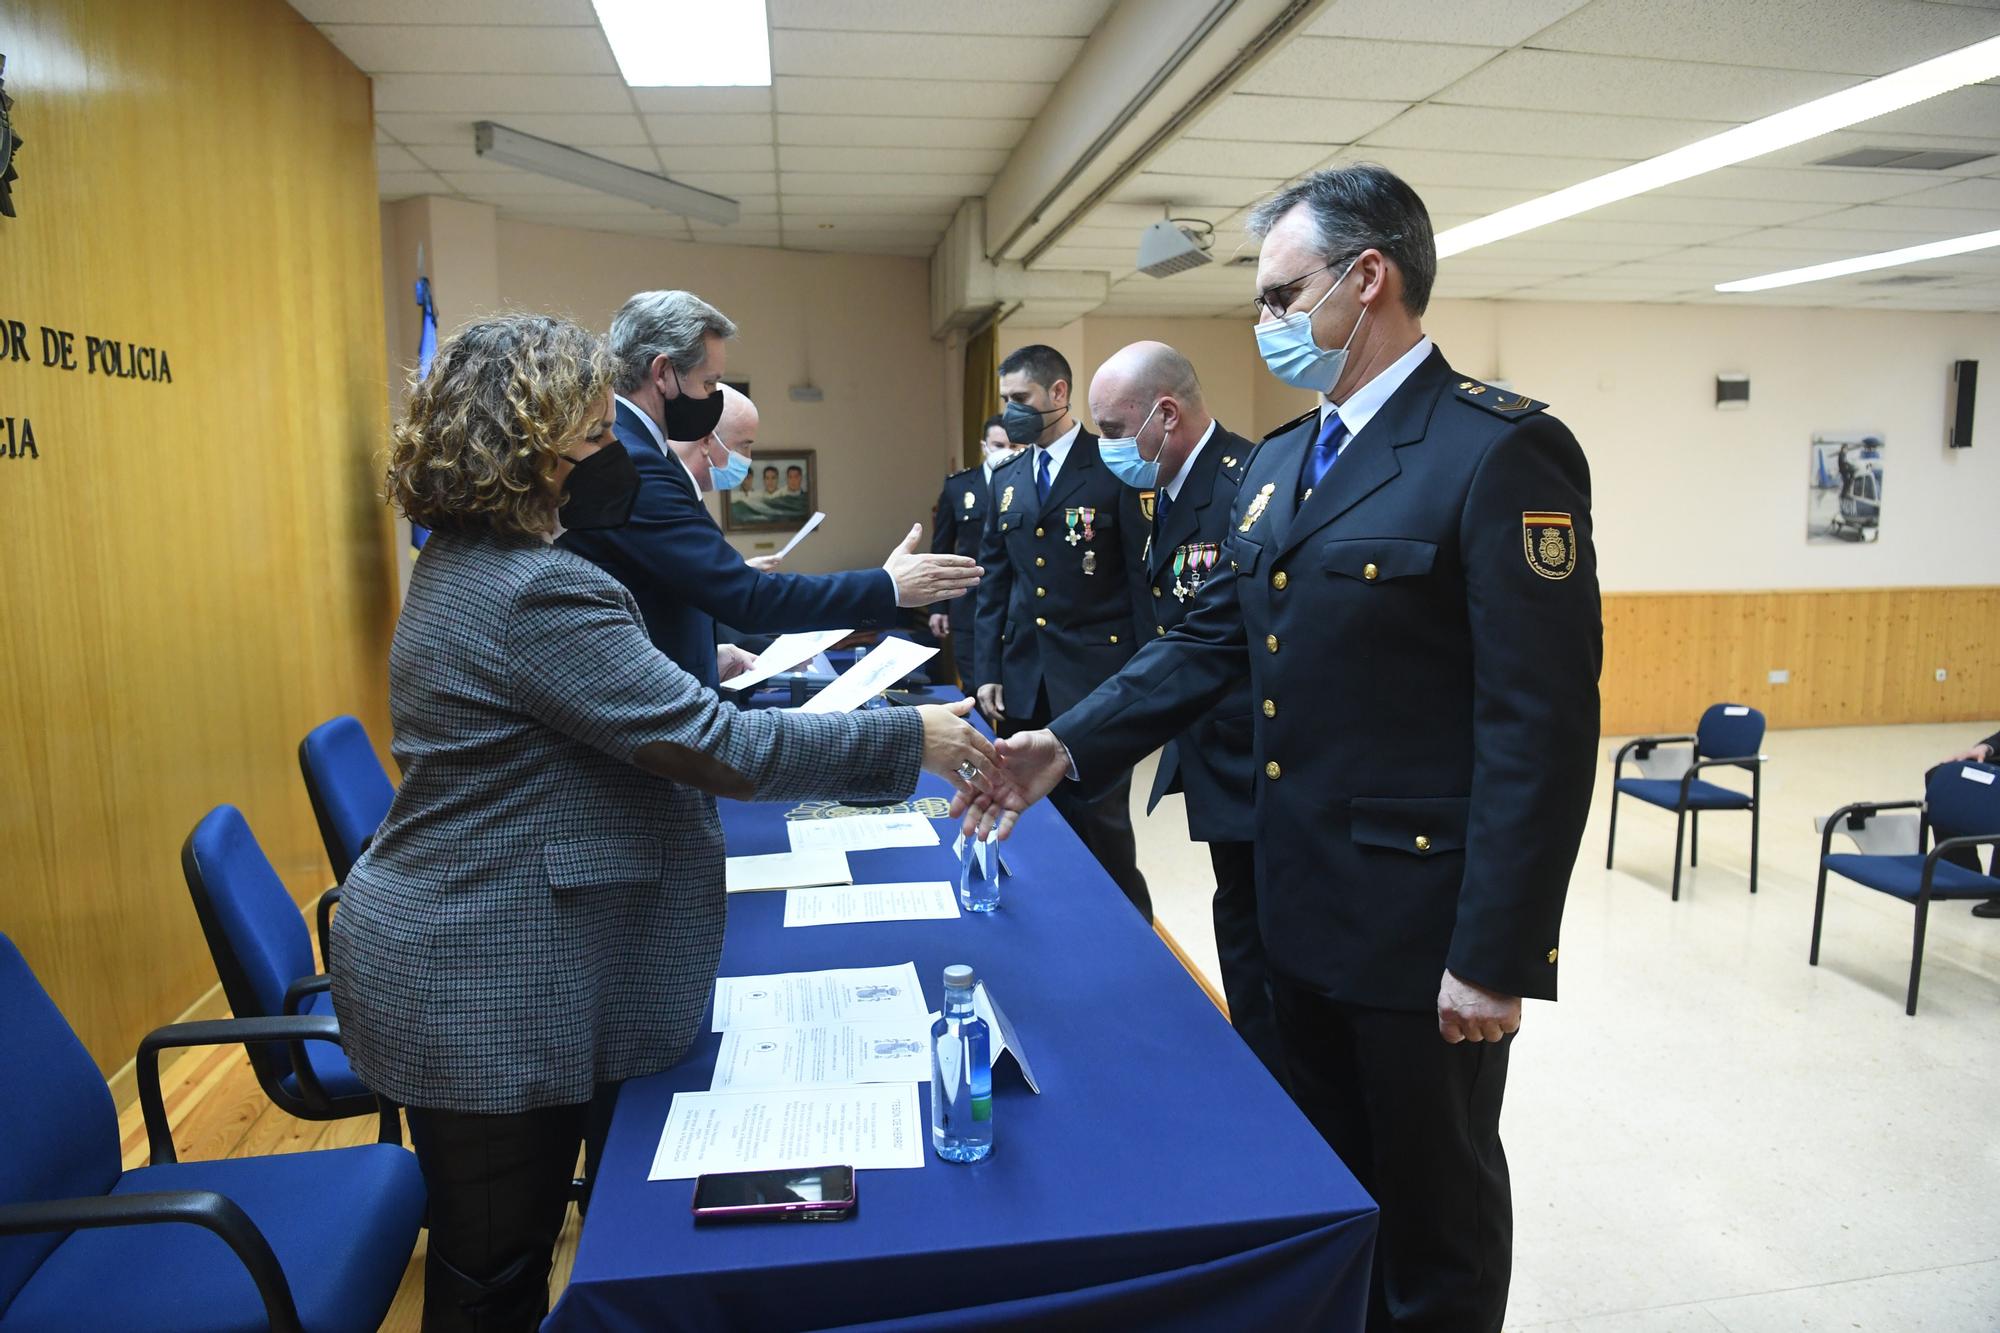 La XXX Promoción de Oficiales de la Policía Nacional en Lonzas jura sus cargos